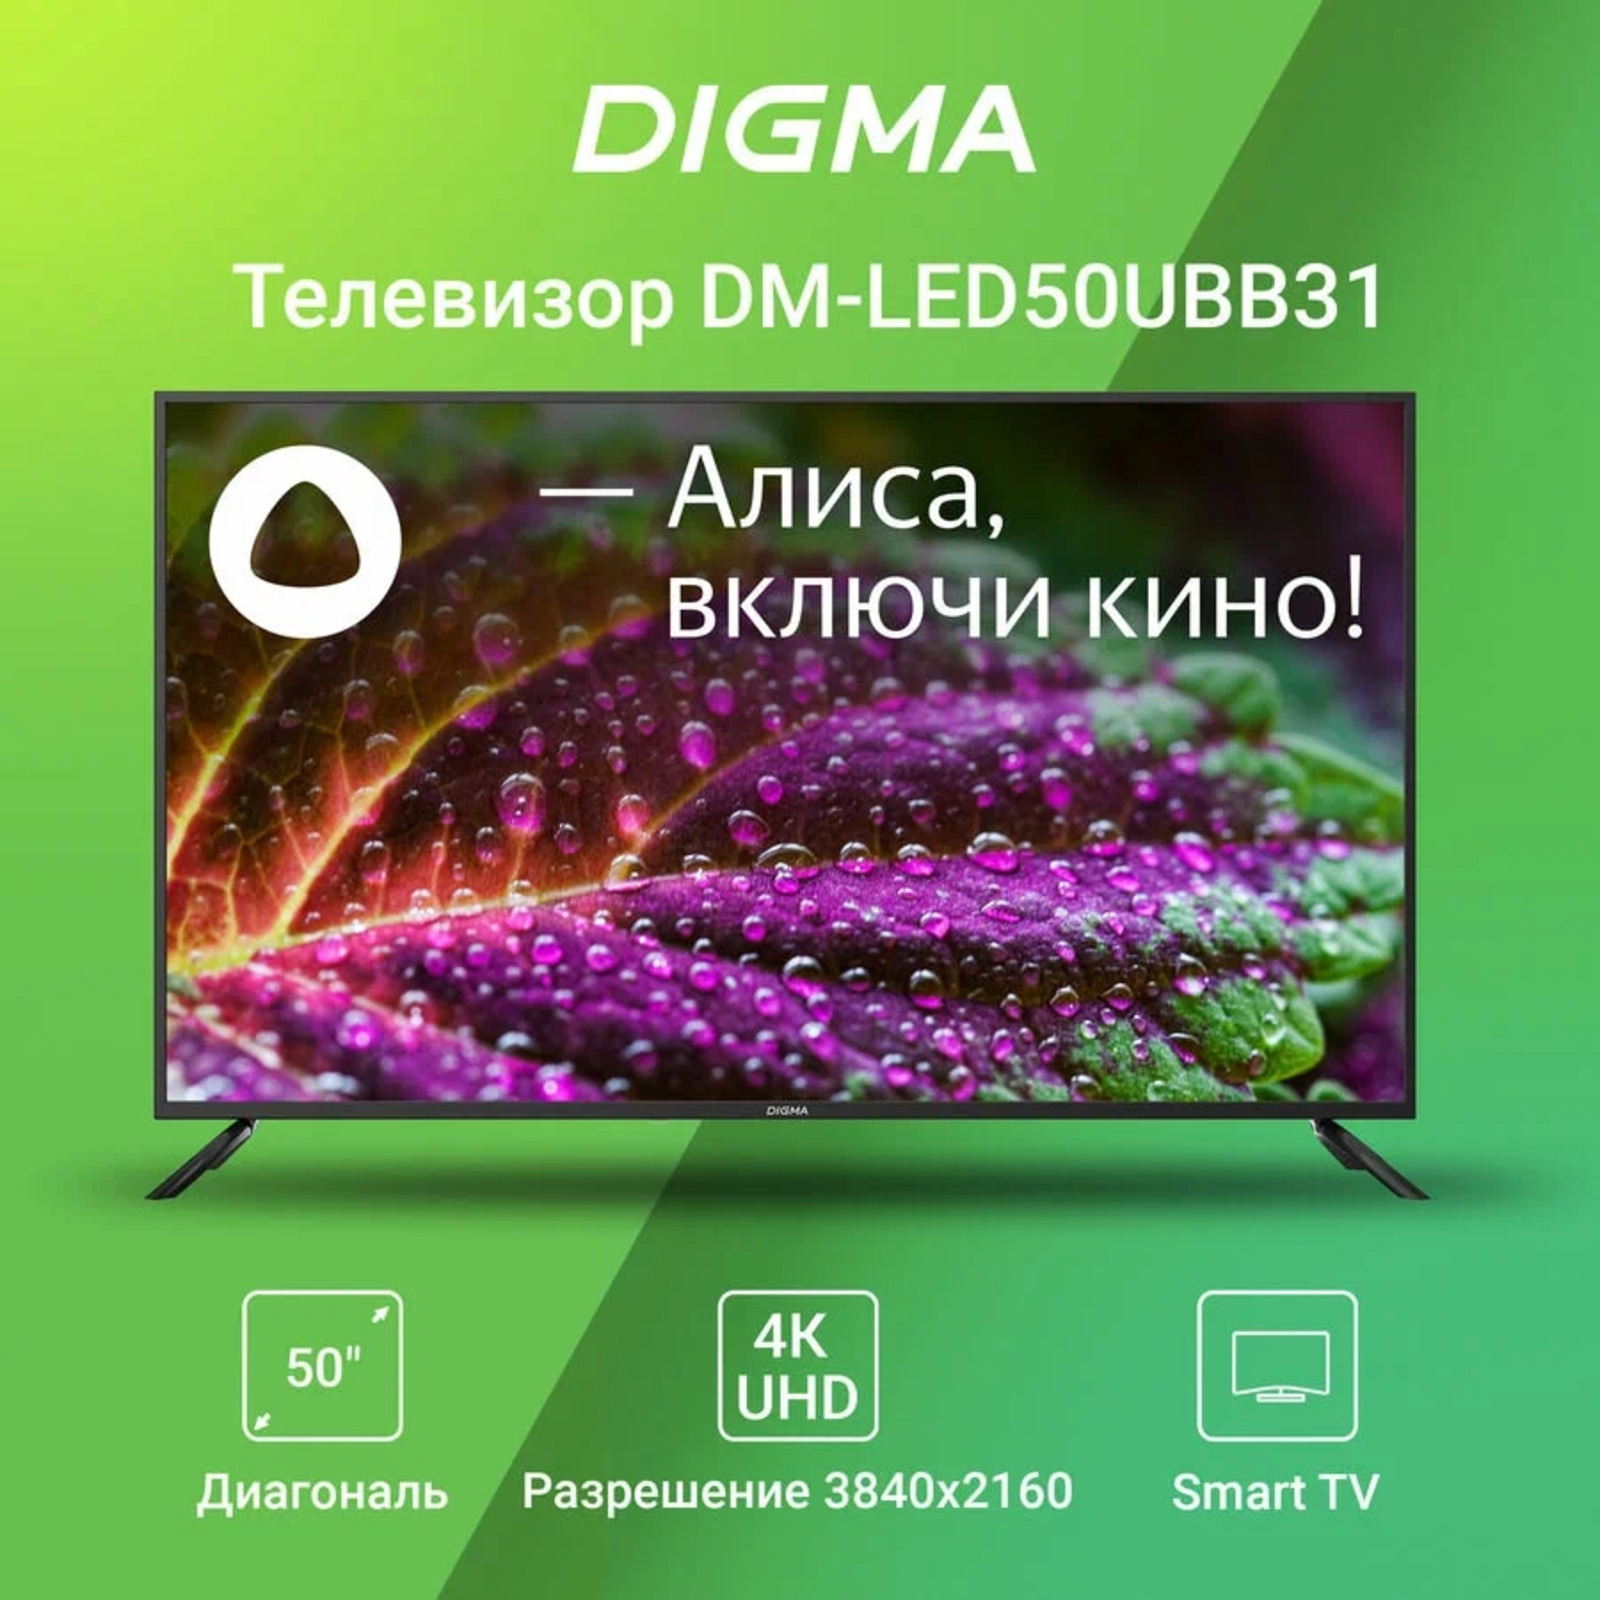 Digma pro телевизор 43. DM-led55ubb31. Телевизор Дигма 55 дюймов. Digma DM-led55ubb31 55" Алиса.